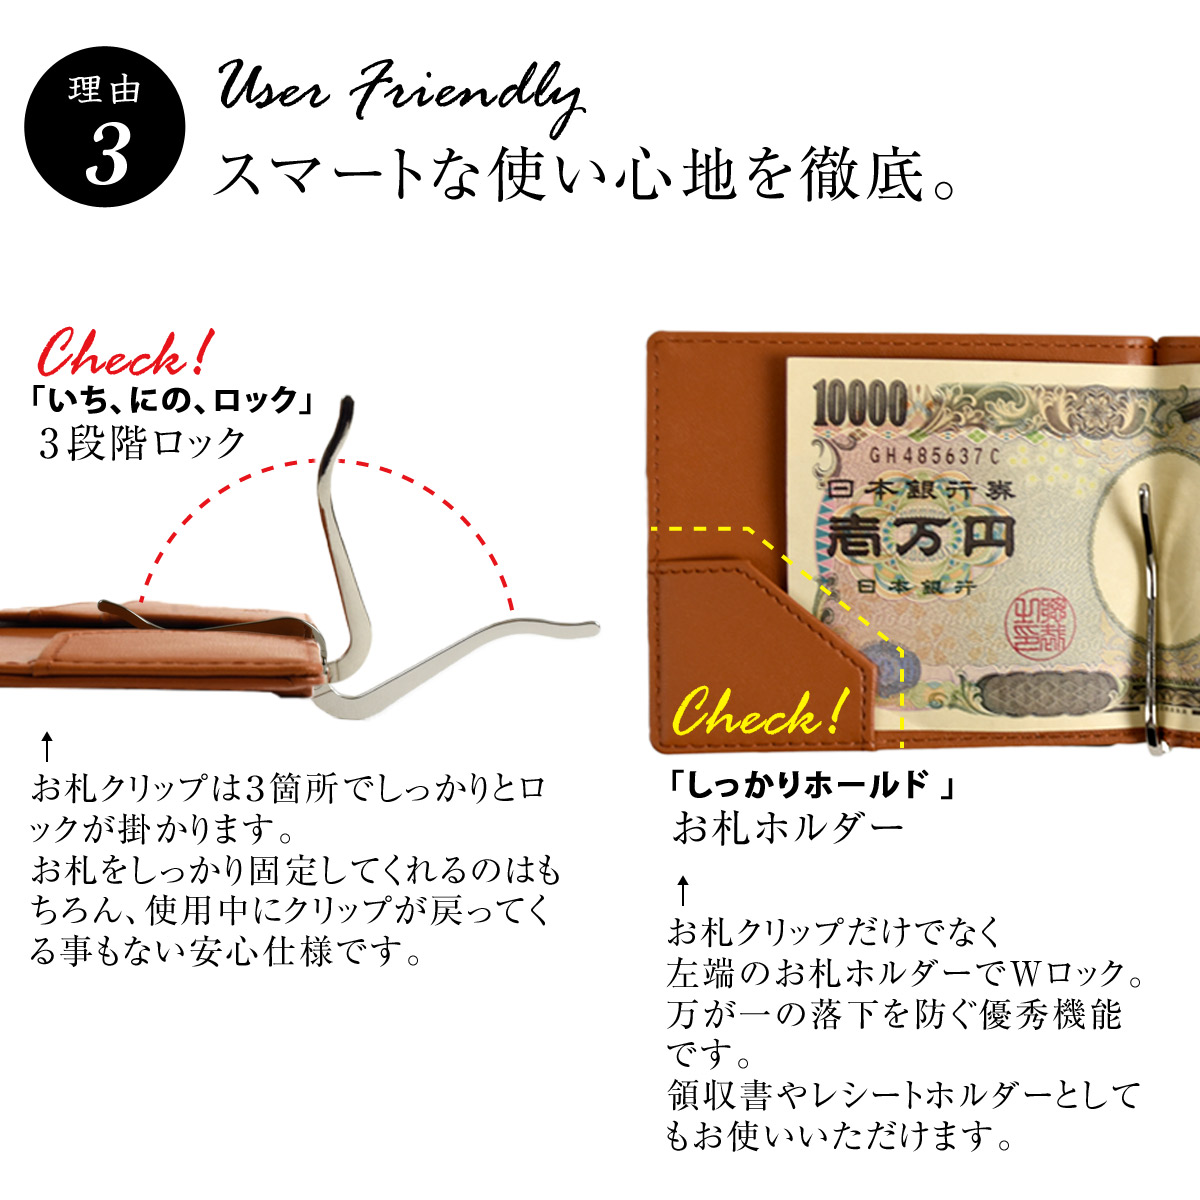 マネークリップ式薄型財布